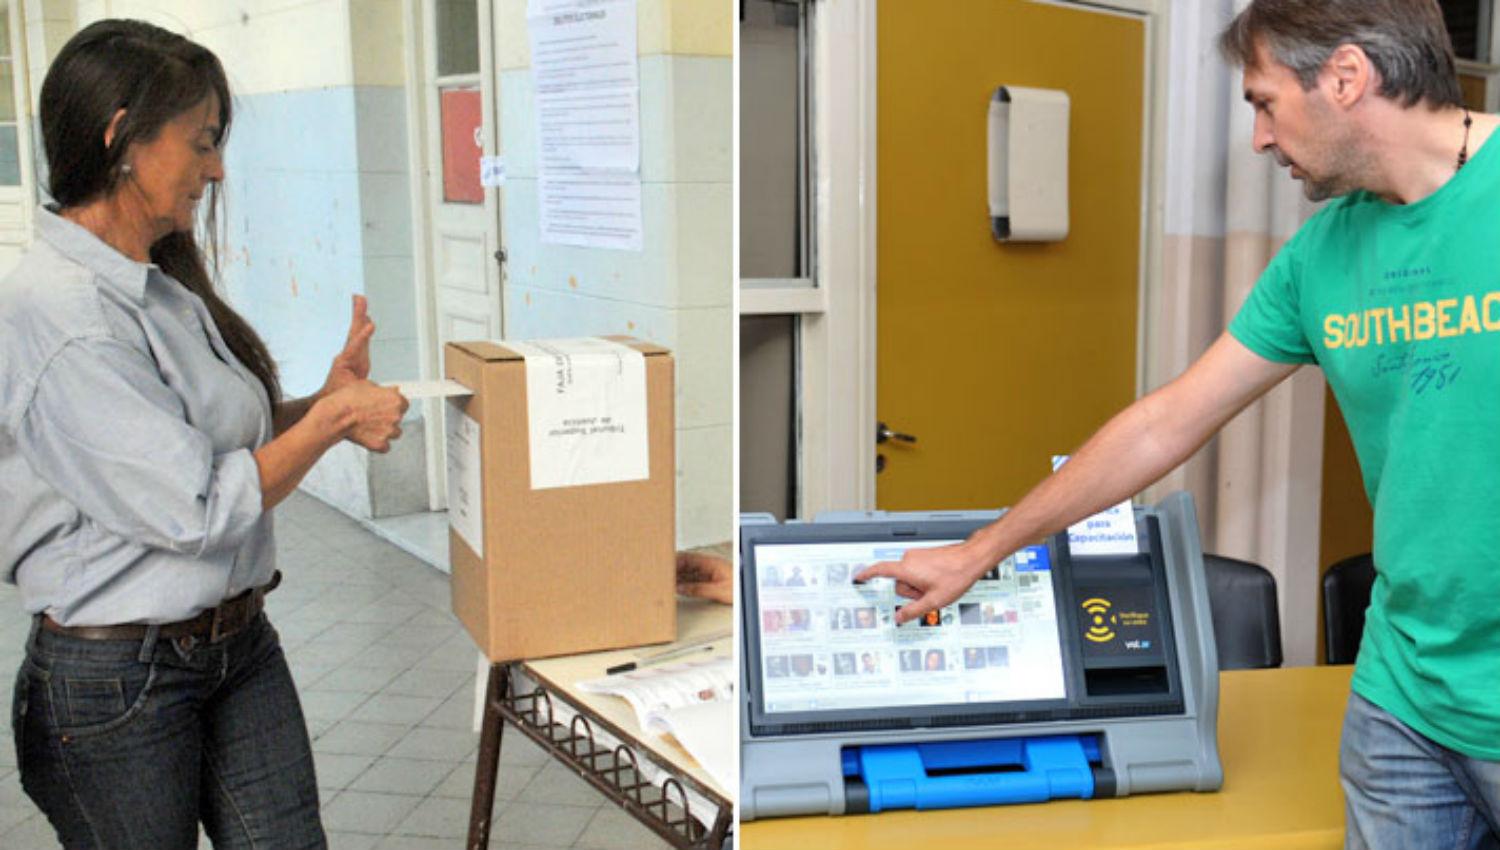 Voto electrónico vs voto tradicional: ¿qué opinan los políticos tucumanos?